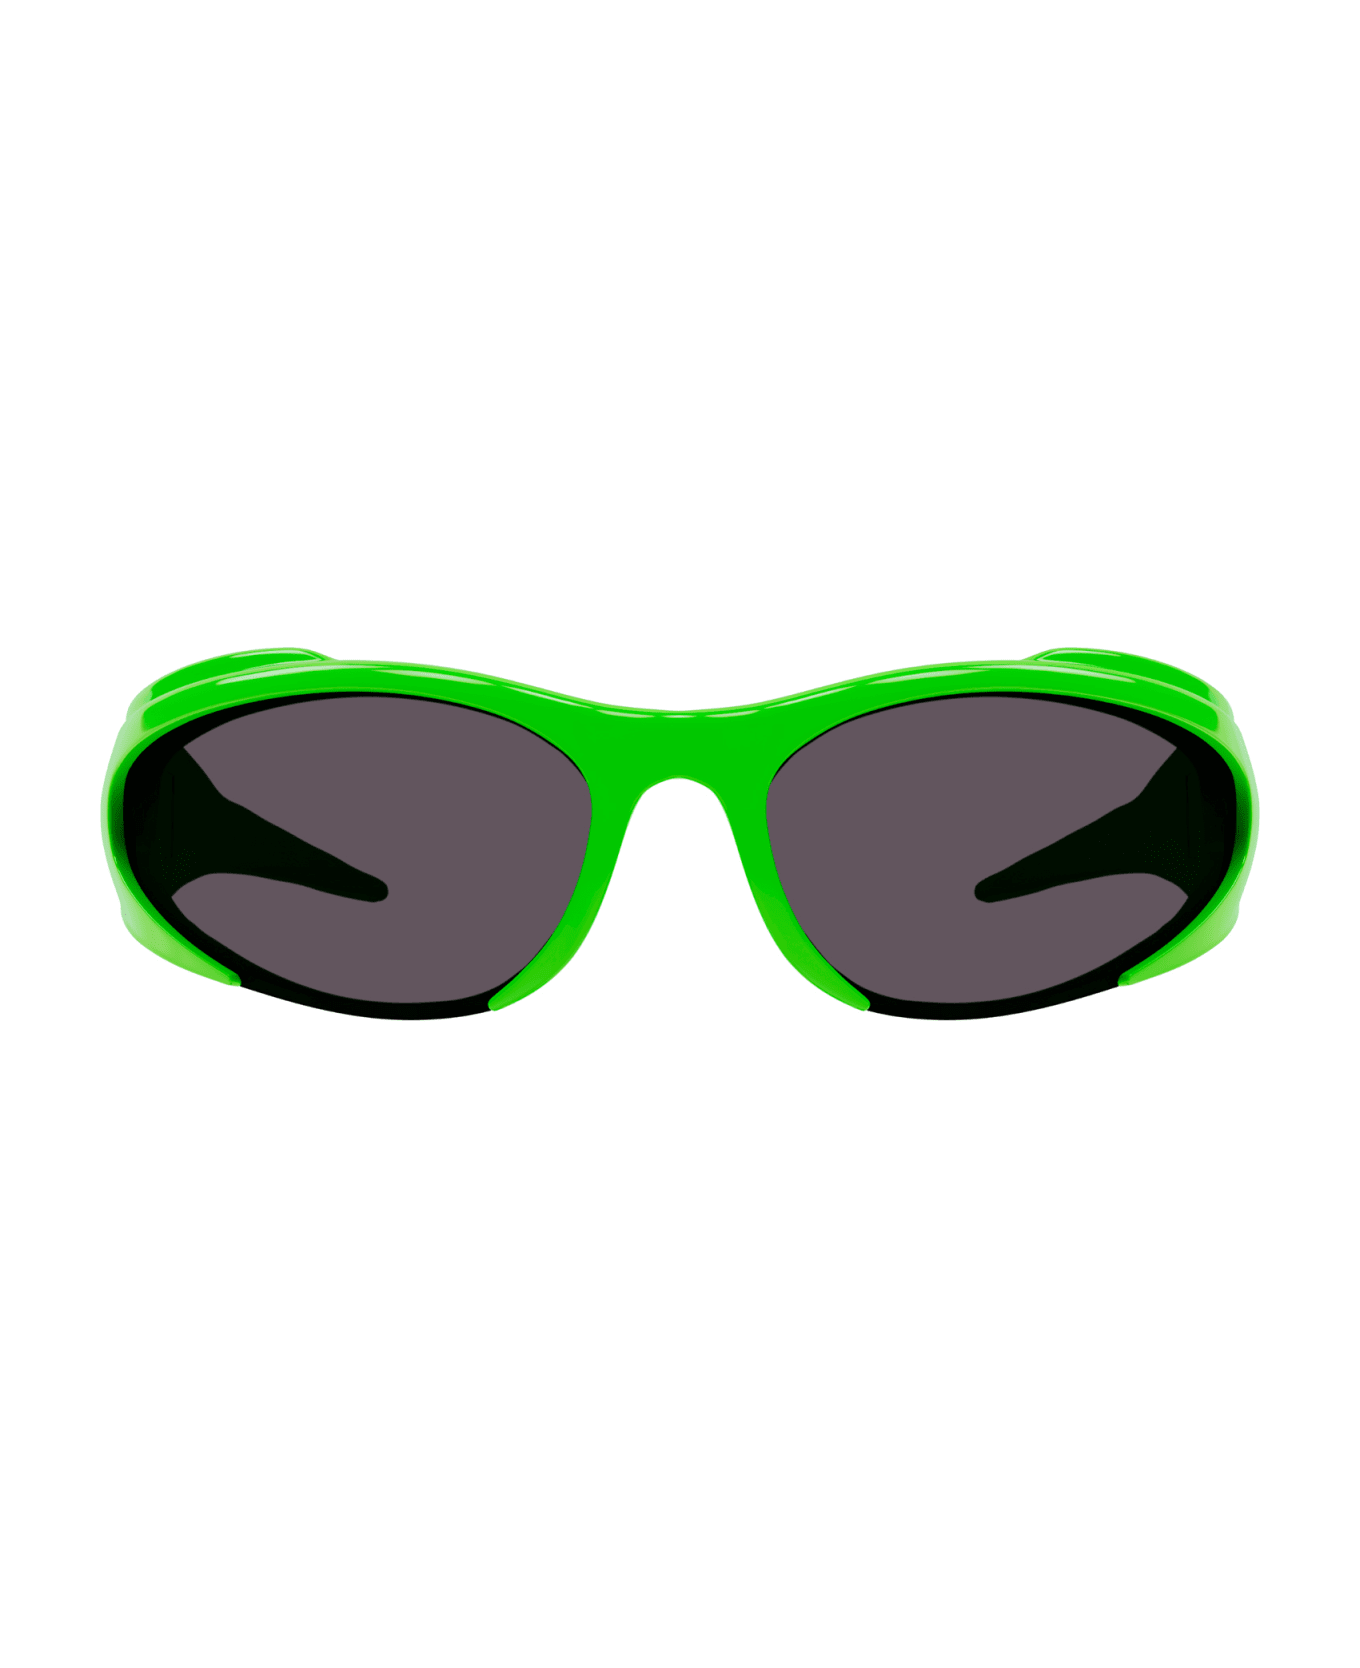 Balenciaga Eyewear 1fbz4li0a - Green Green Grey